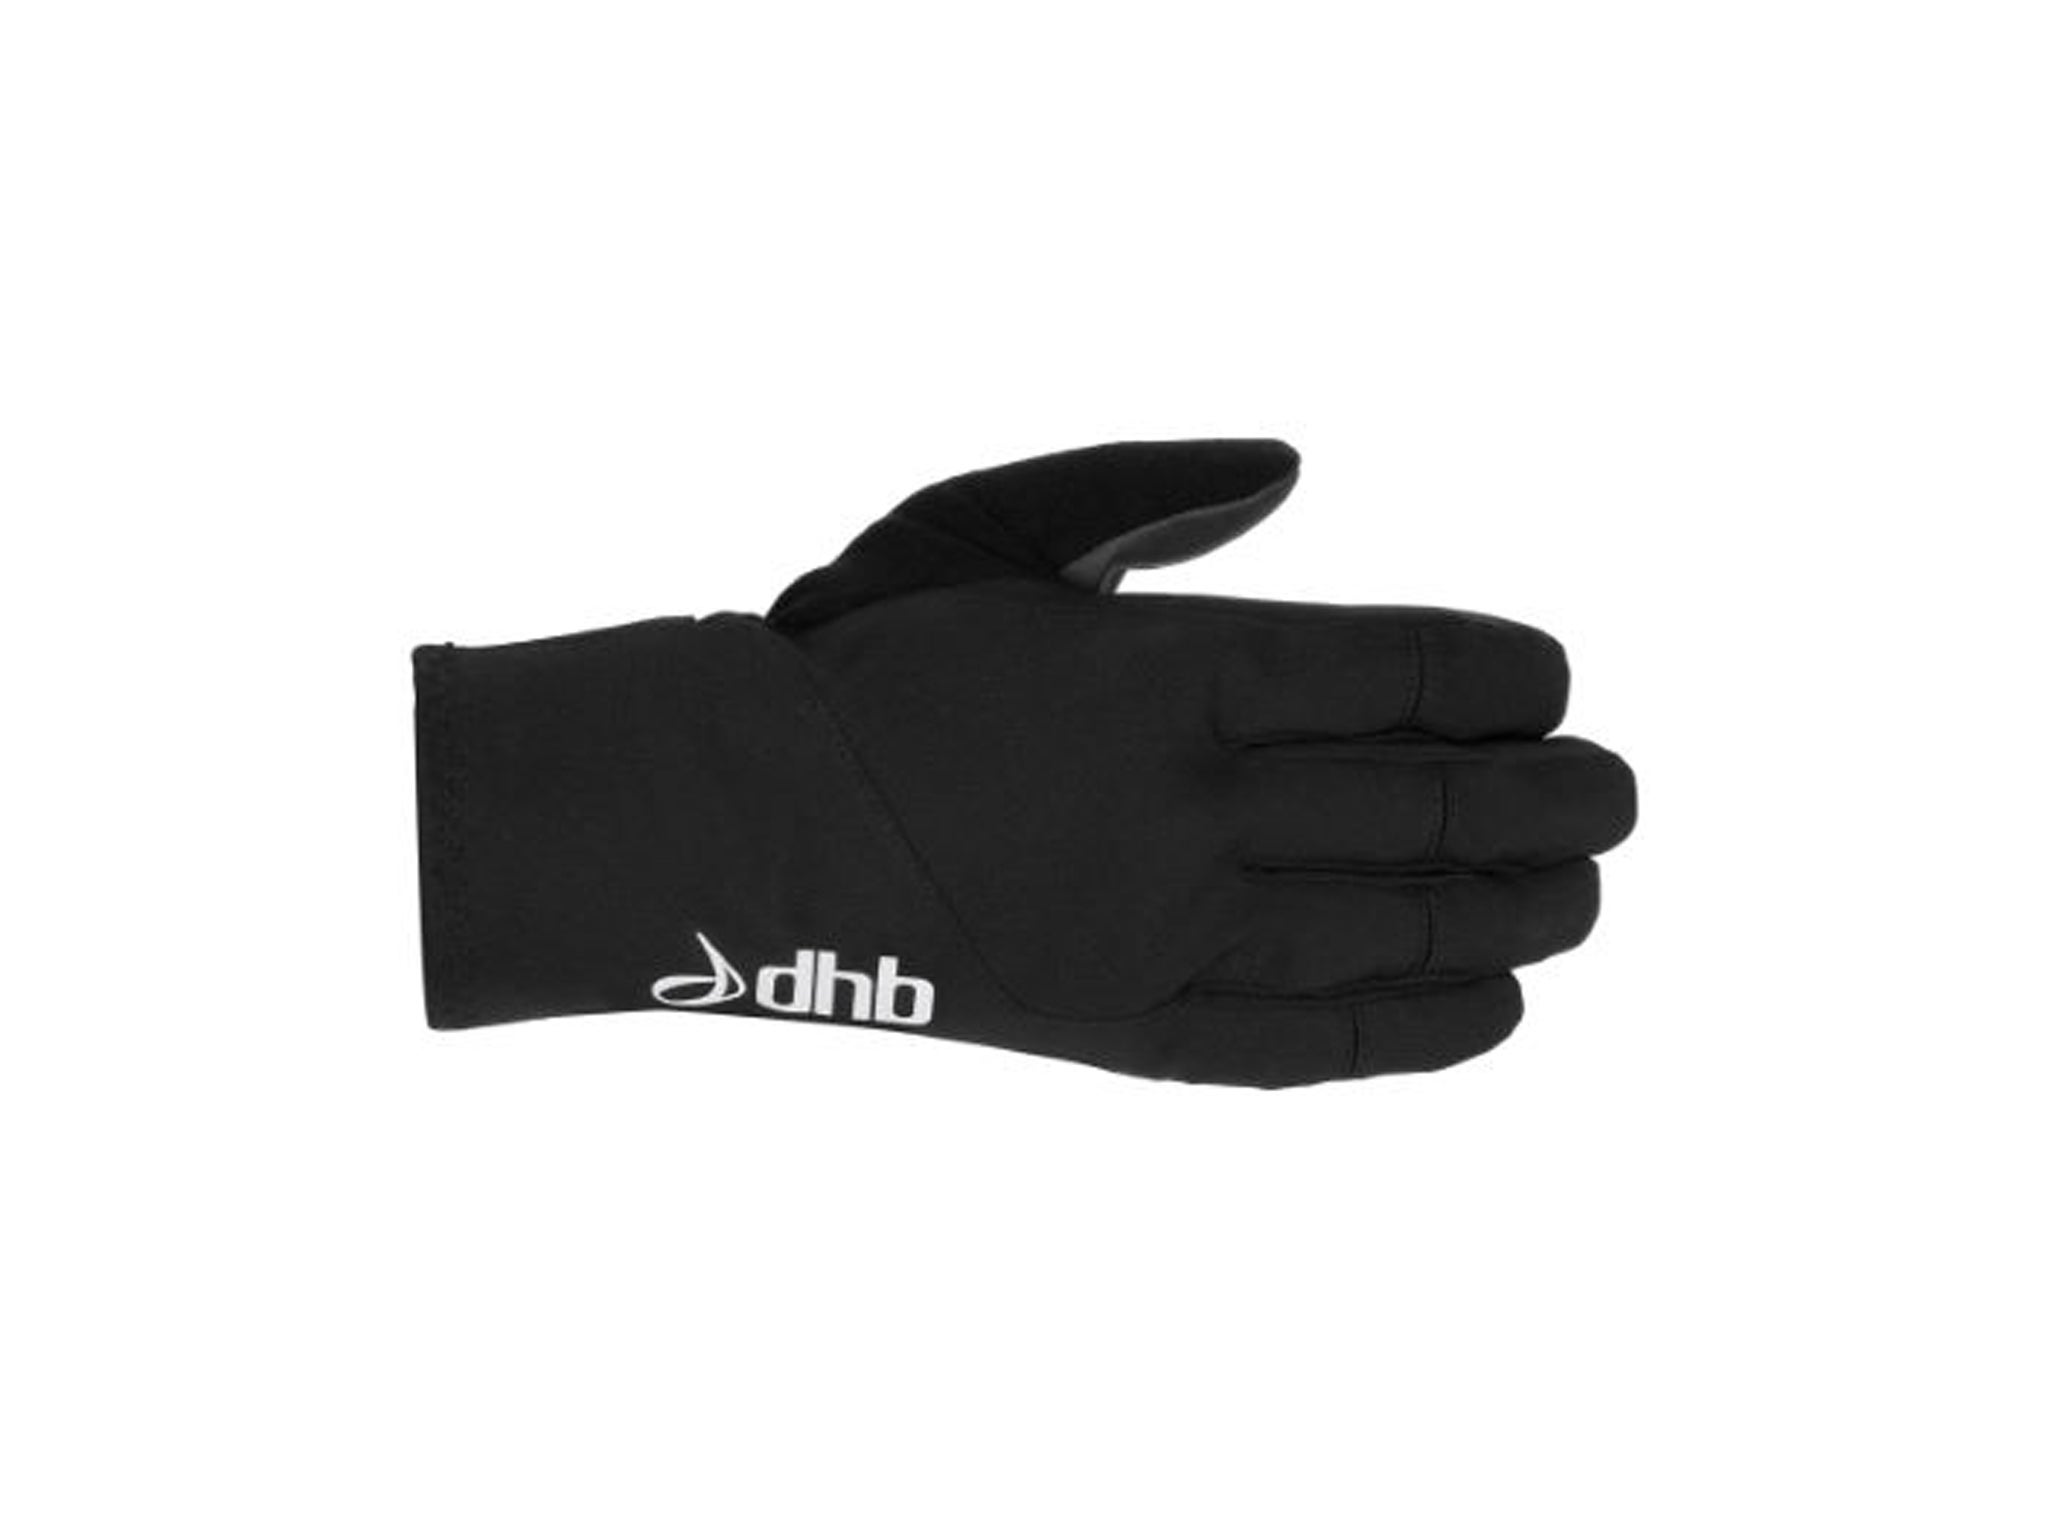 dhb cycling gloves